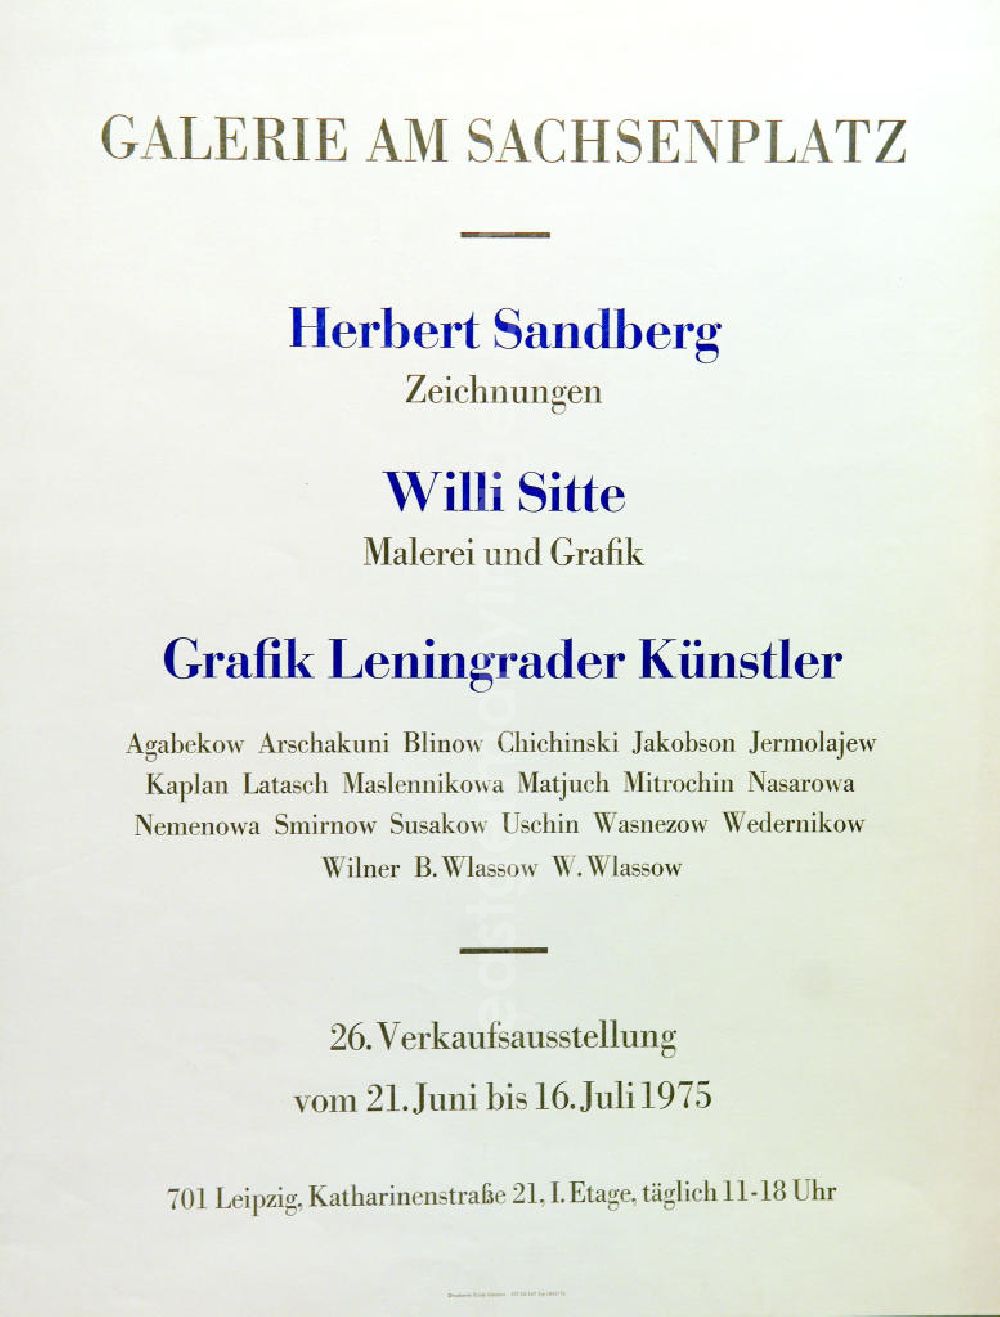 GDR photo archive: Berlin - Plakat der Ausstellung Herbert Sandberg Zeichnungen u.a. vom 21.06.-16.07.1975 Galerie am Sachsenplatz, 4